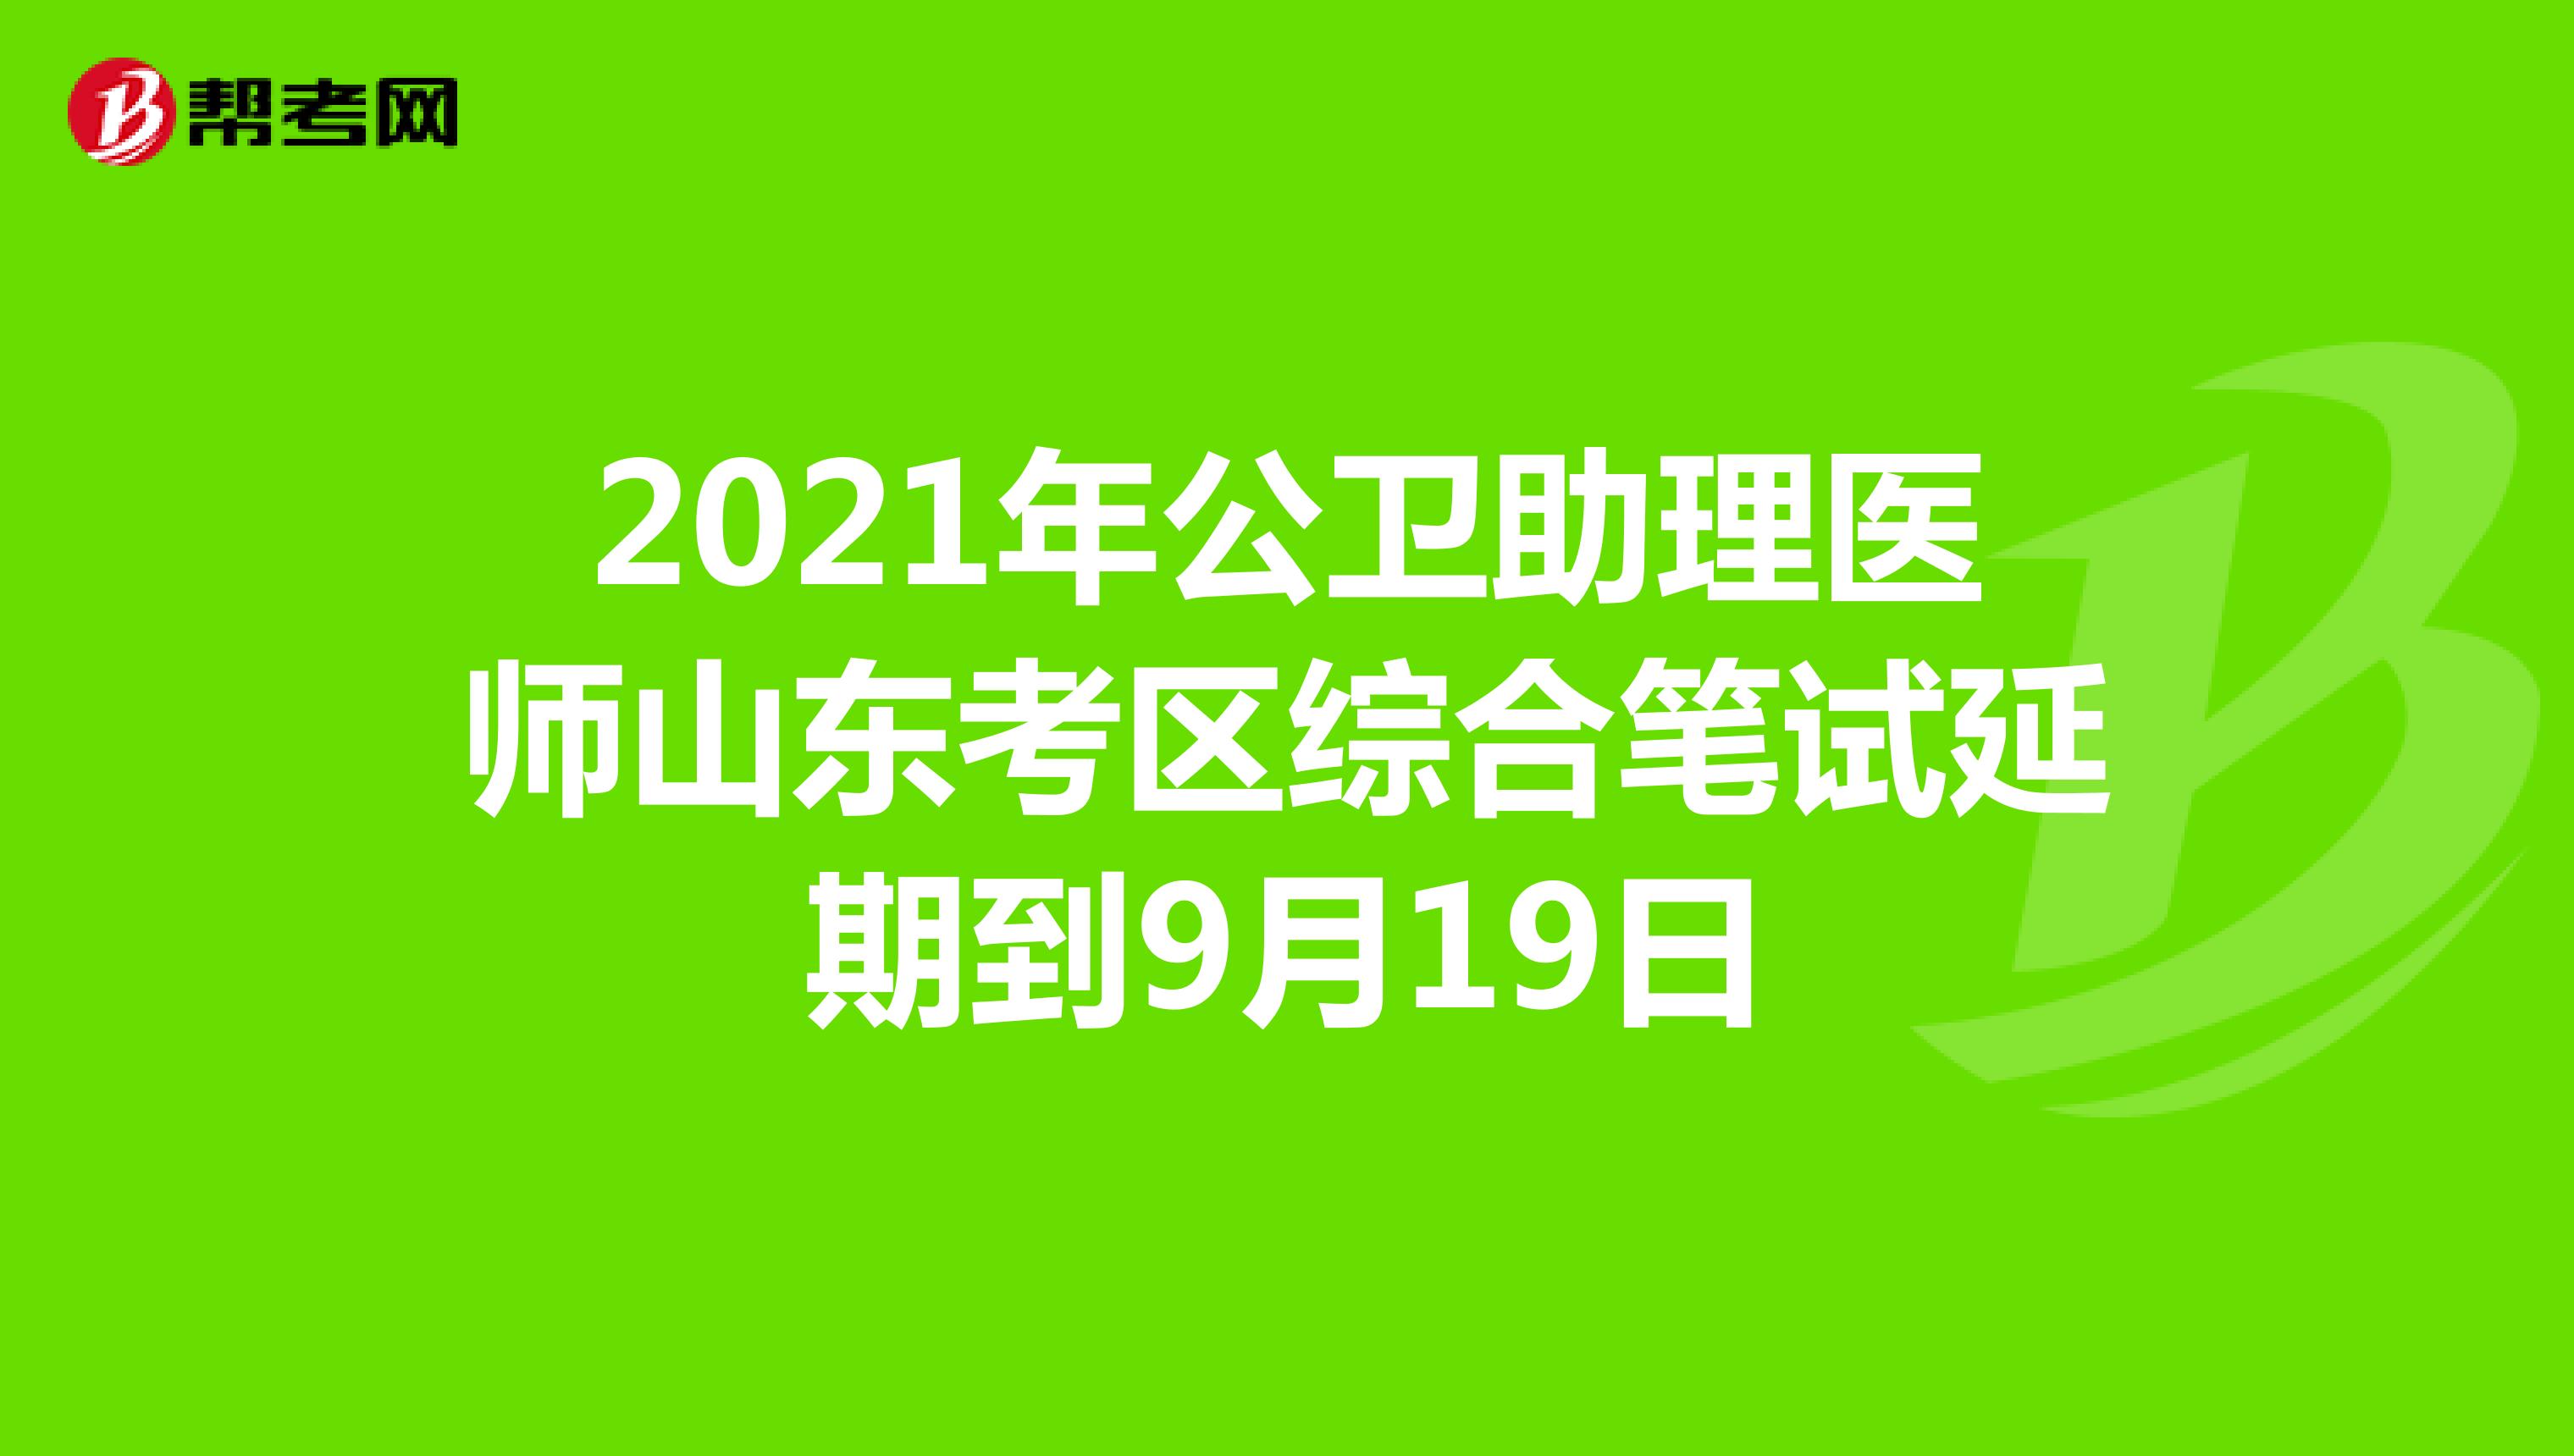 2021年公卫助理医师山东考区综合笔试延期到9月19日